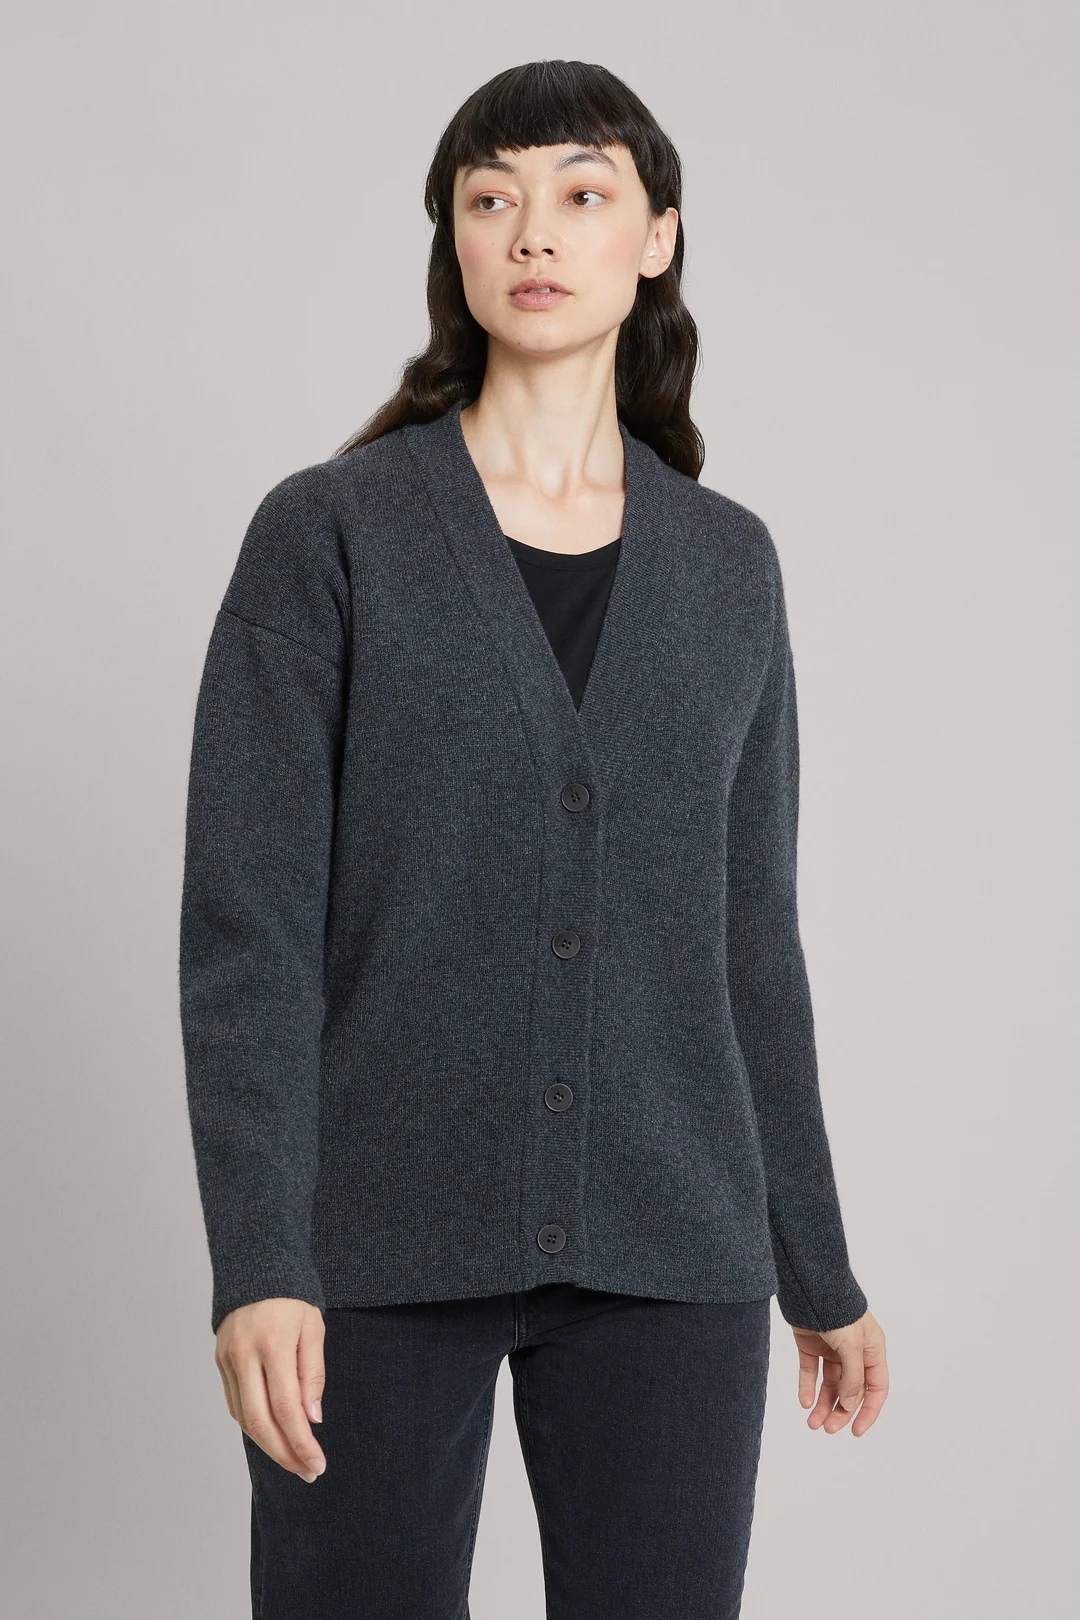 Charcoal Melange Wool Cardigan | 100% Recycled Wool- ASKET